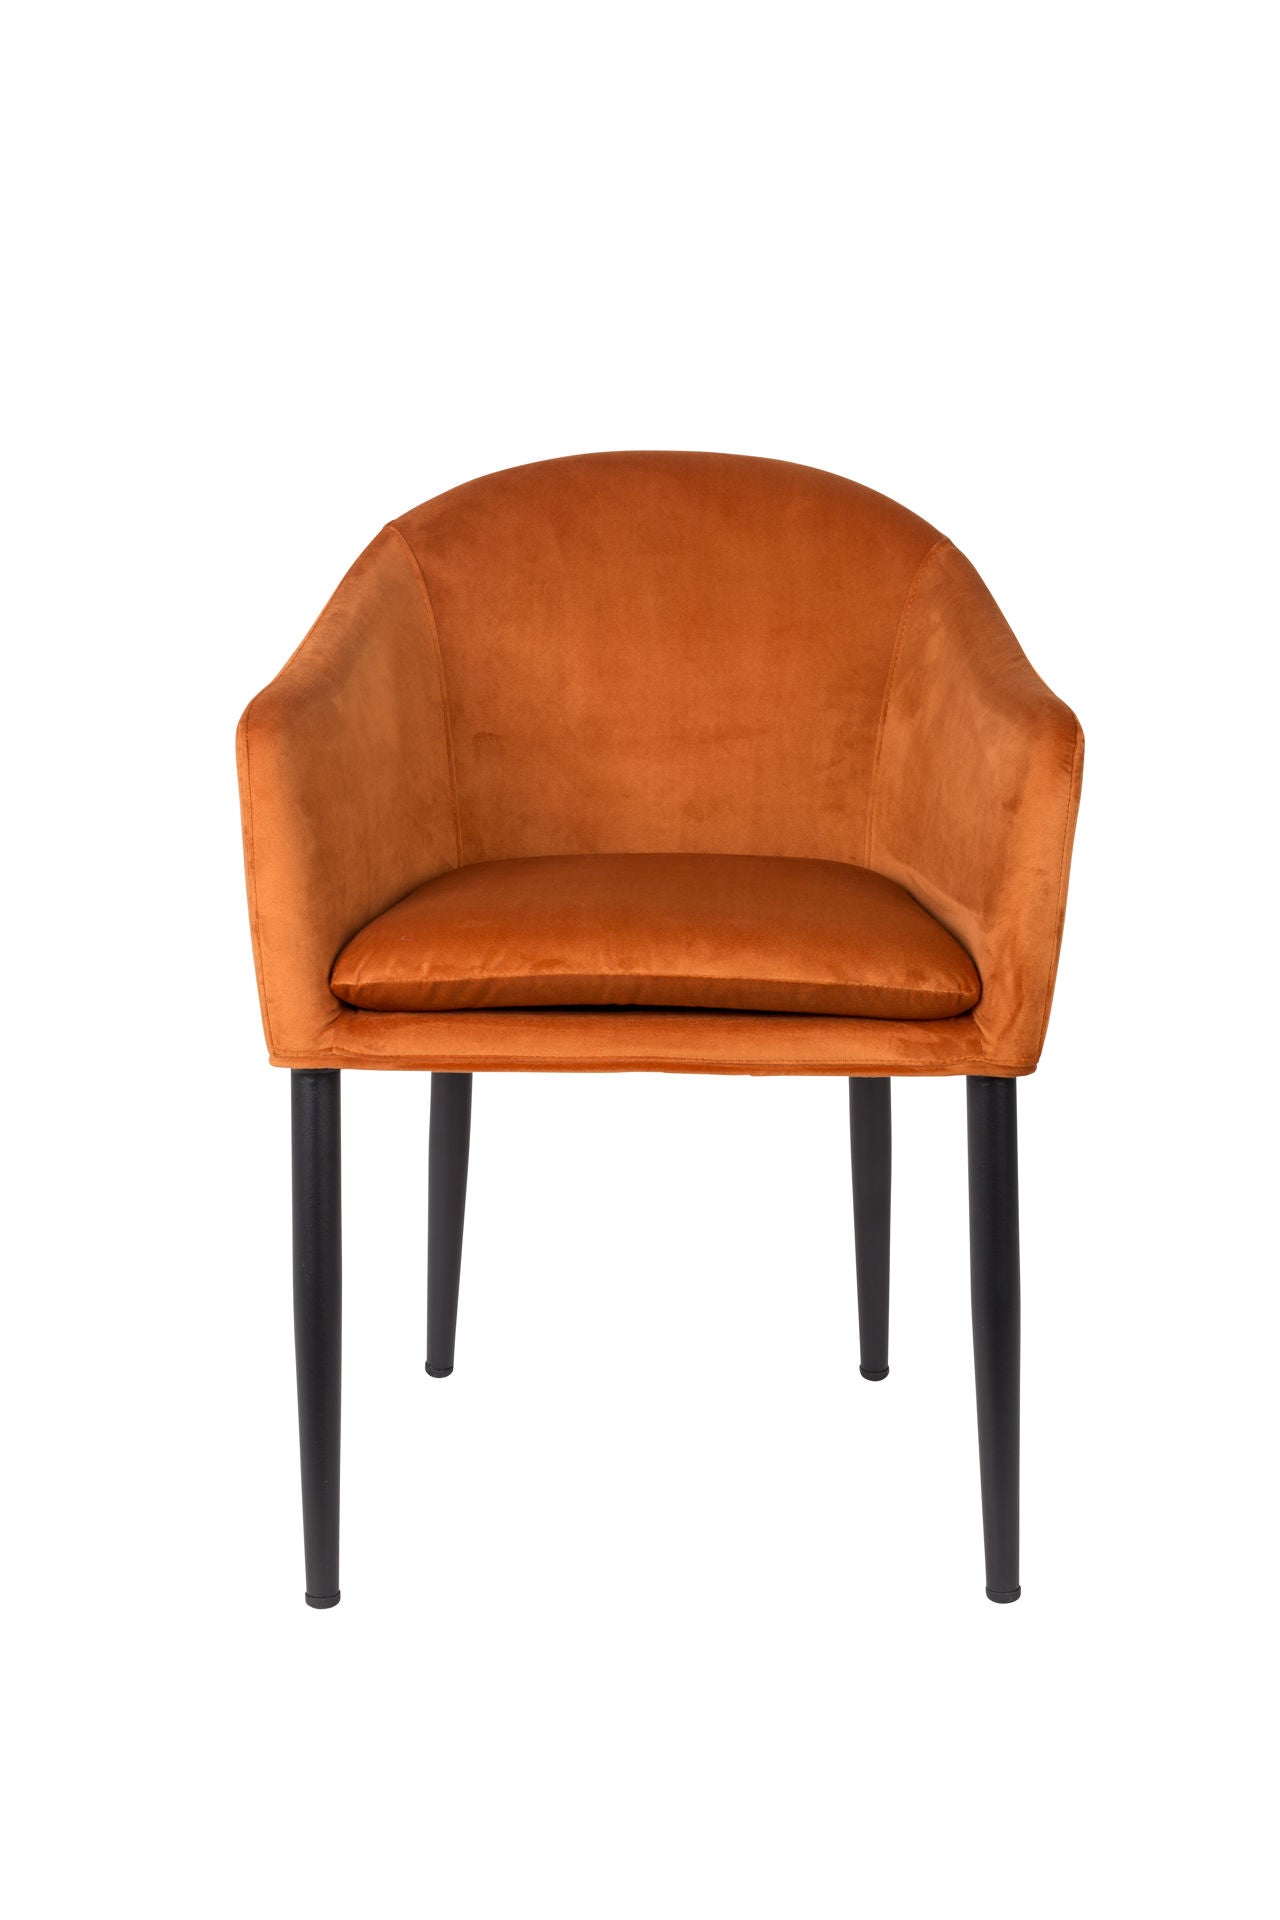 Nancy's Kalifornsky Chair - Retro - Orange, Black - Velvet, Plywood, Steel - 55.5 cm x 57 cm x 77 cm